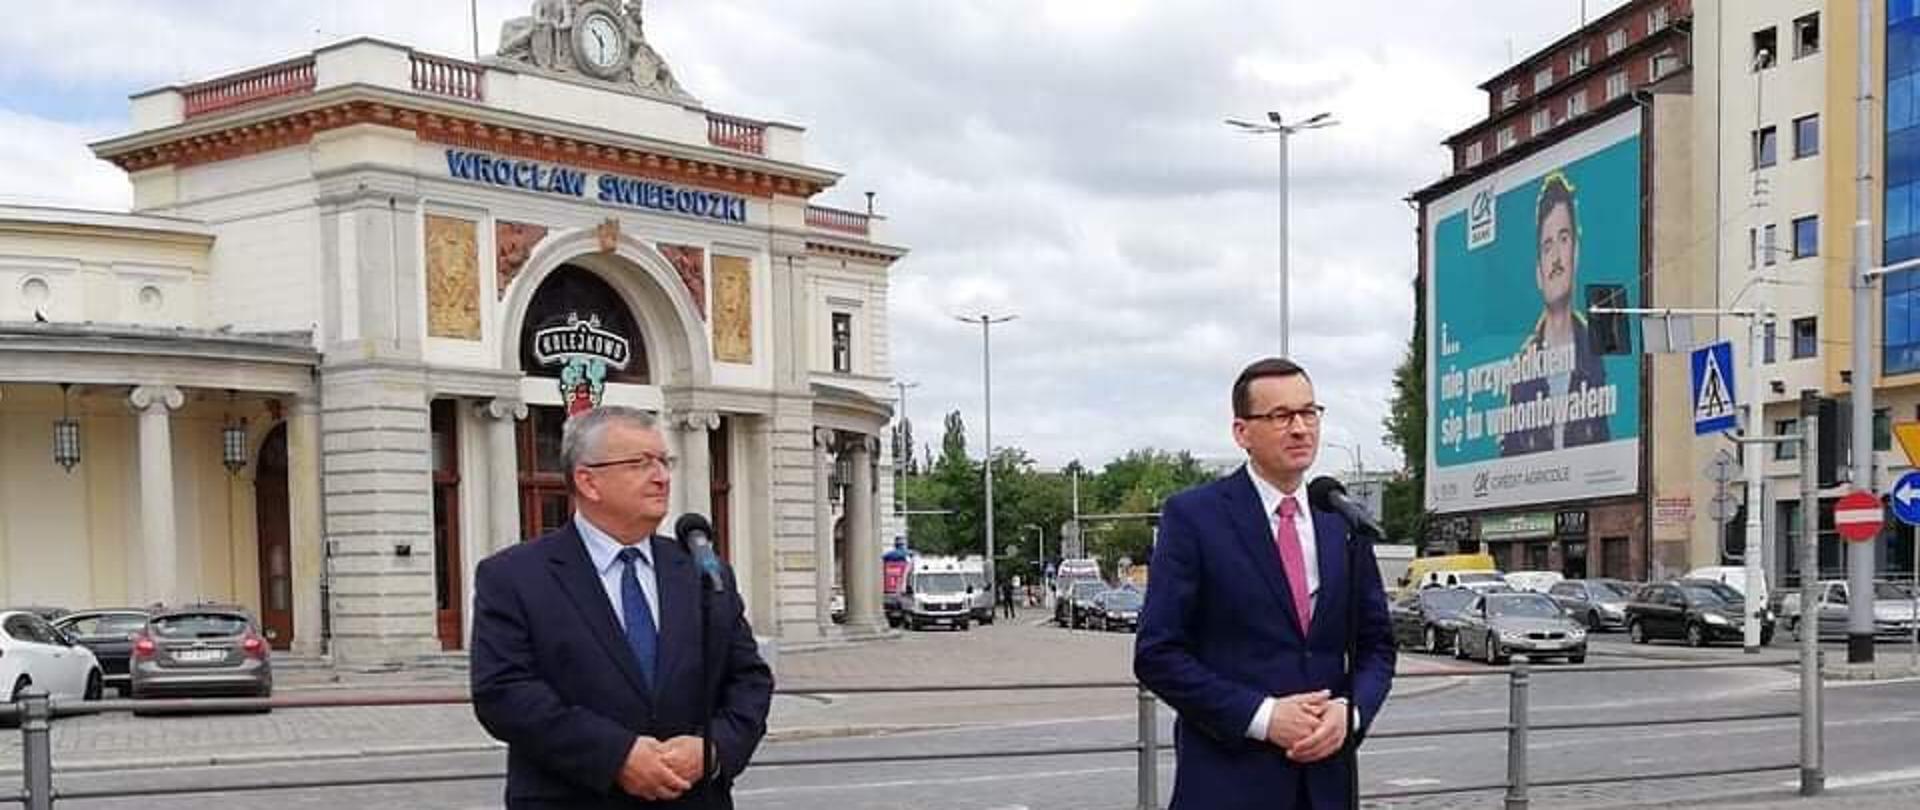 Premier M. Morawiecki i minister A. Adamczyk wzięli udział w konferencji prasowej na dworcu Wrocław Świebodzki